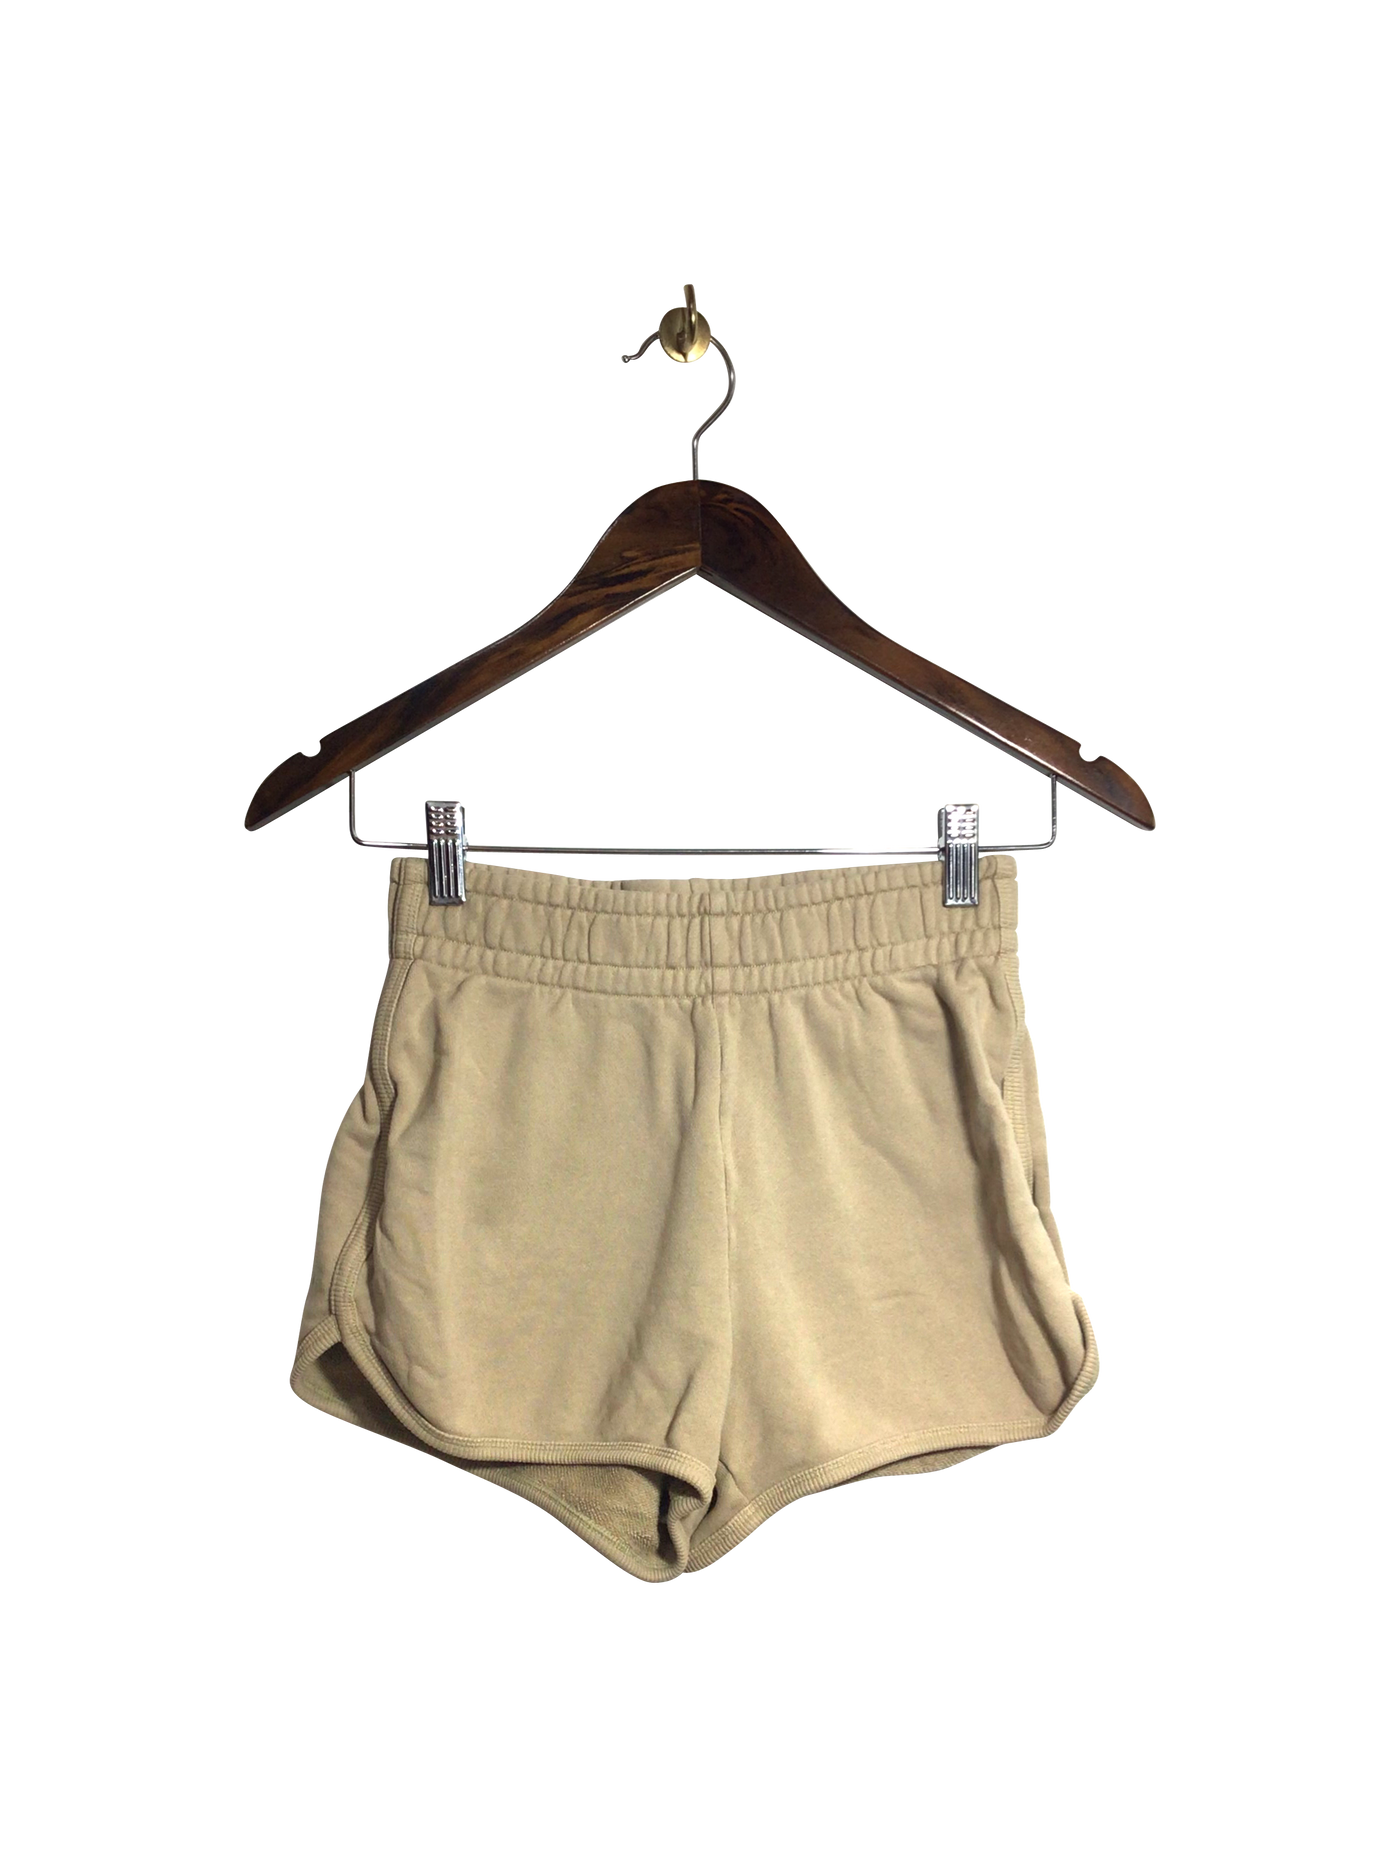 WILFRED FREE Women Classic Shorts Regular fit in Beige - Size 2XS | 18.76 $ KOOP